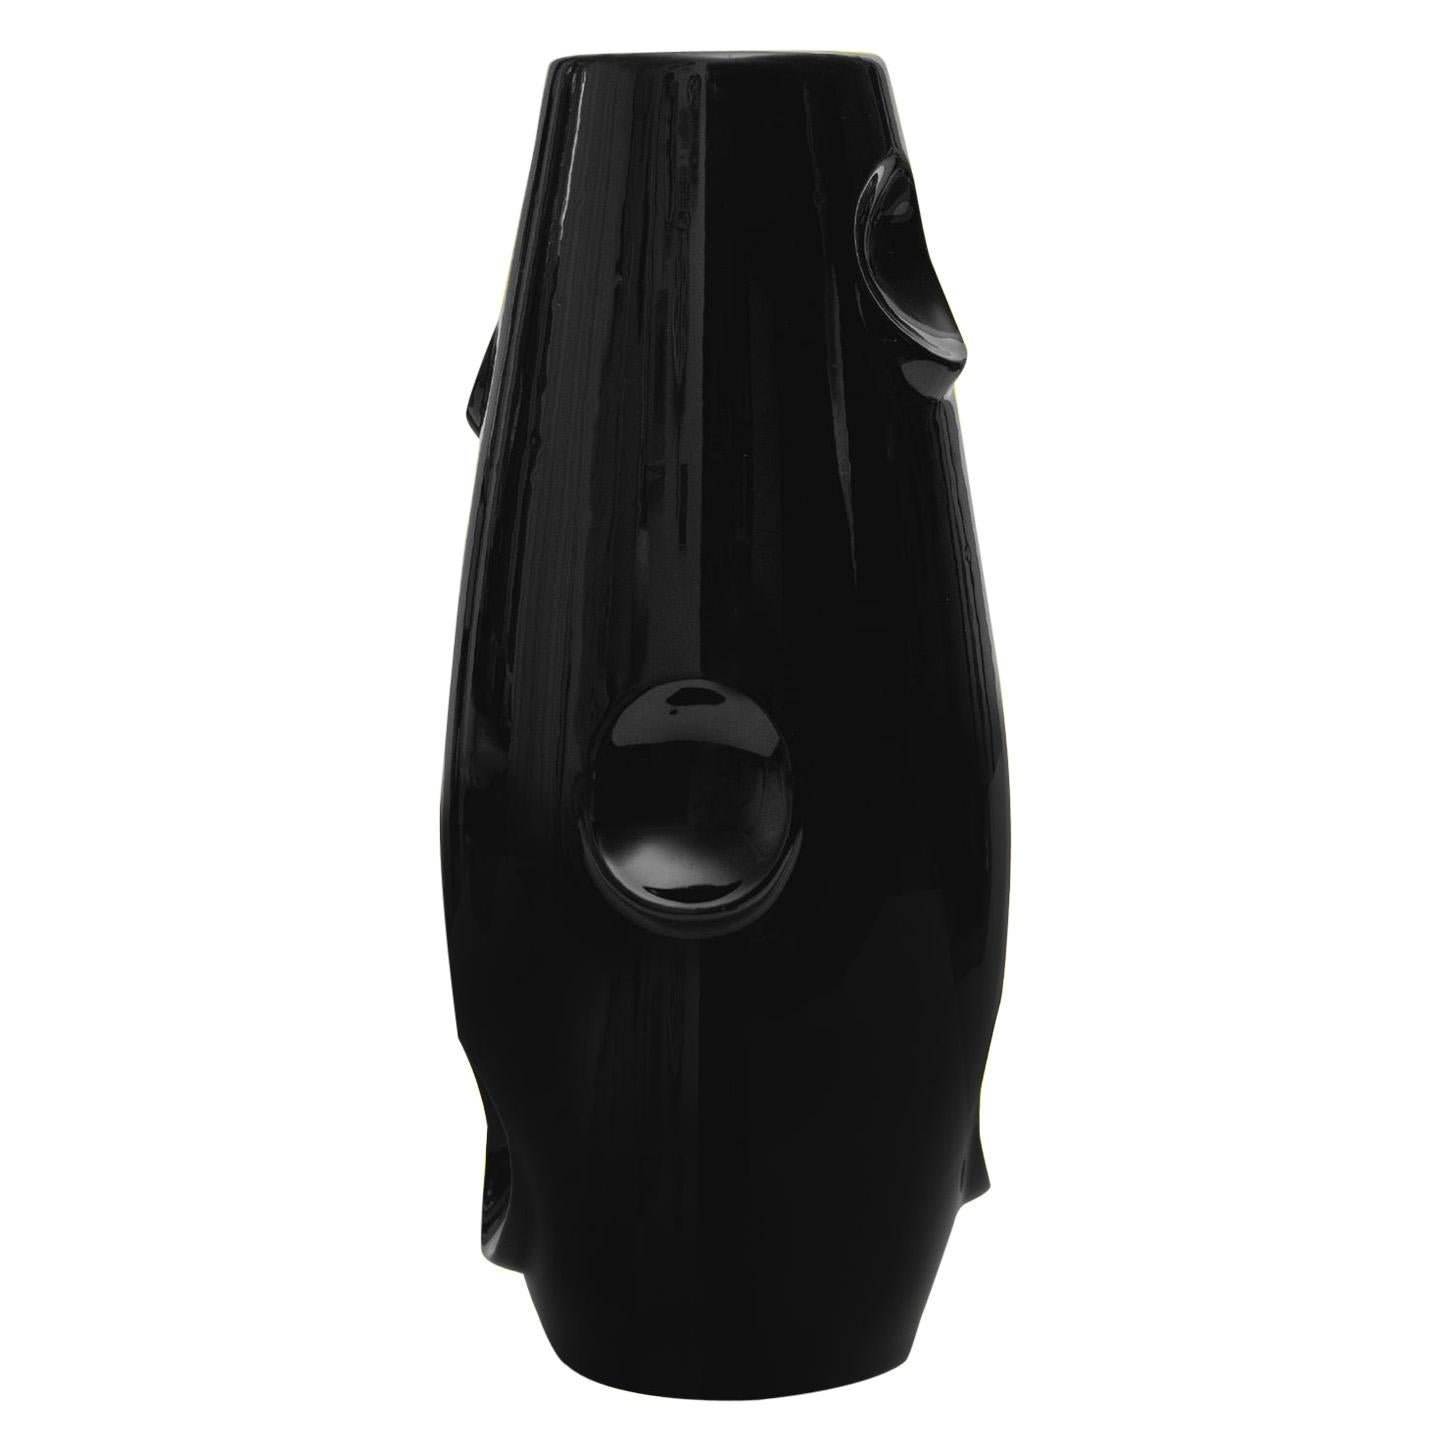 OKO Vase aus schwarzer Keramik von Malwina Konopacka